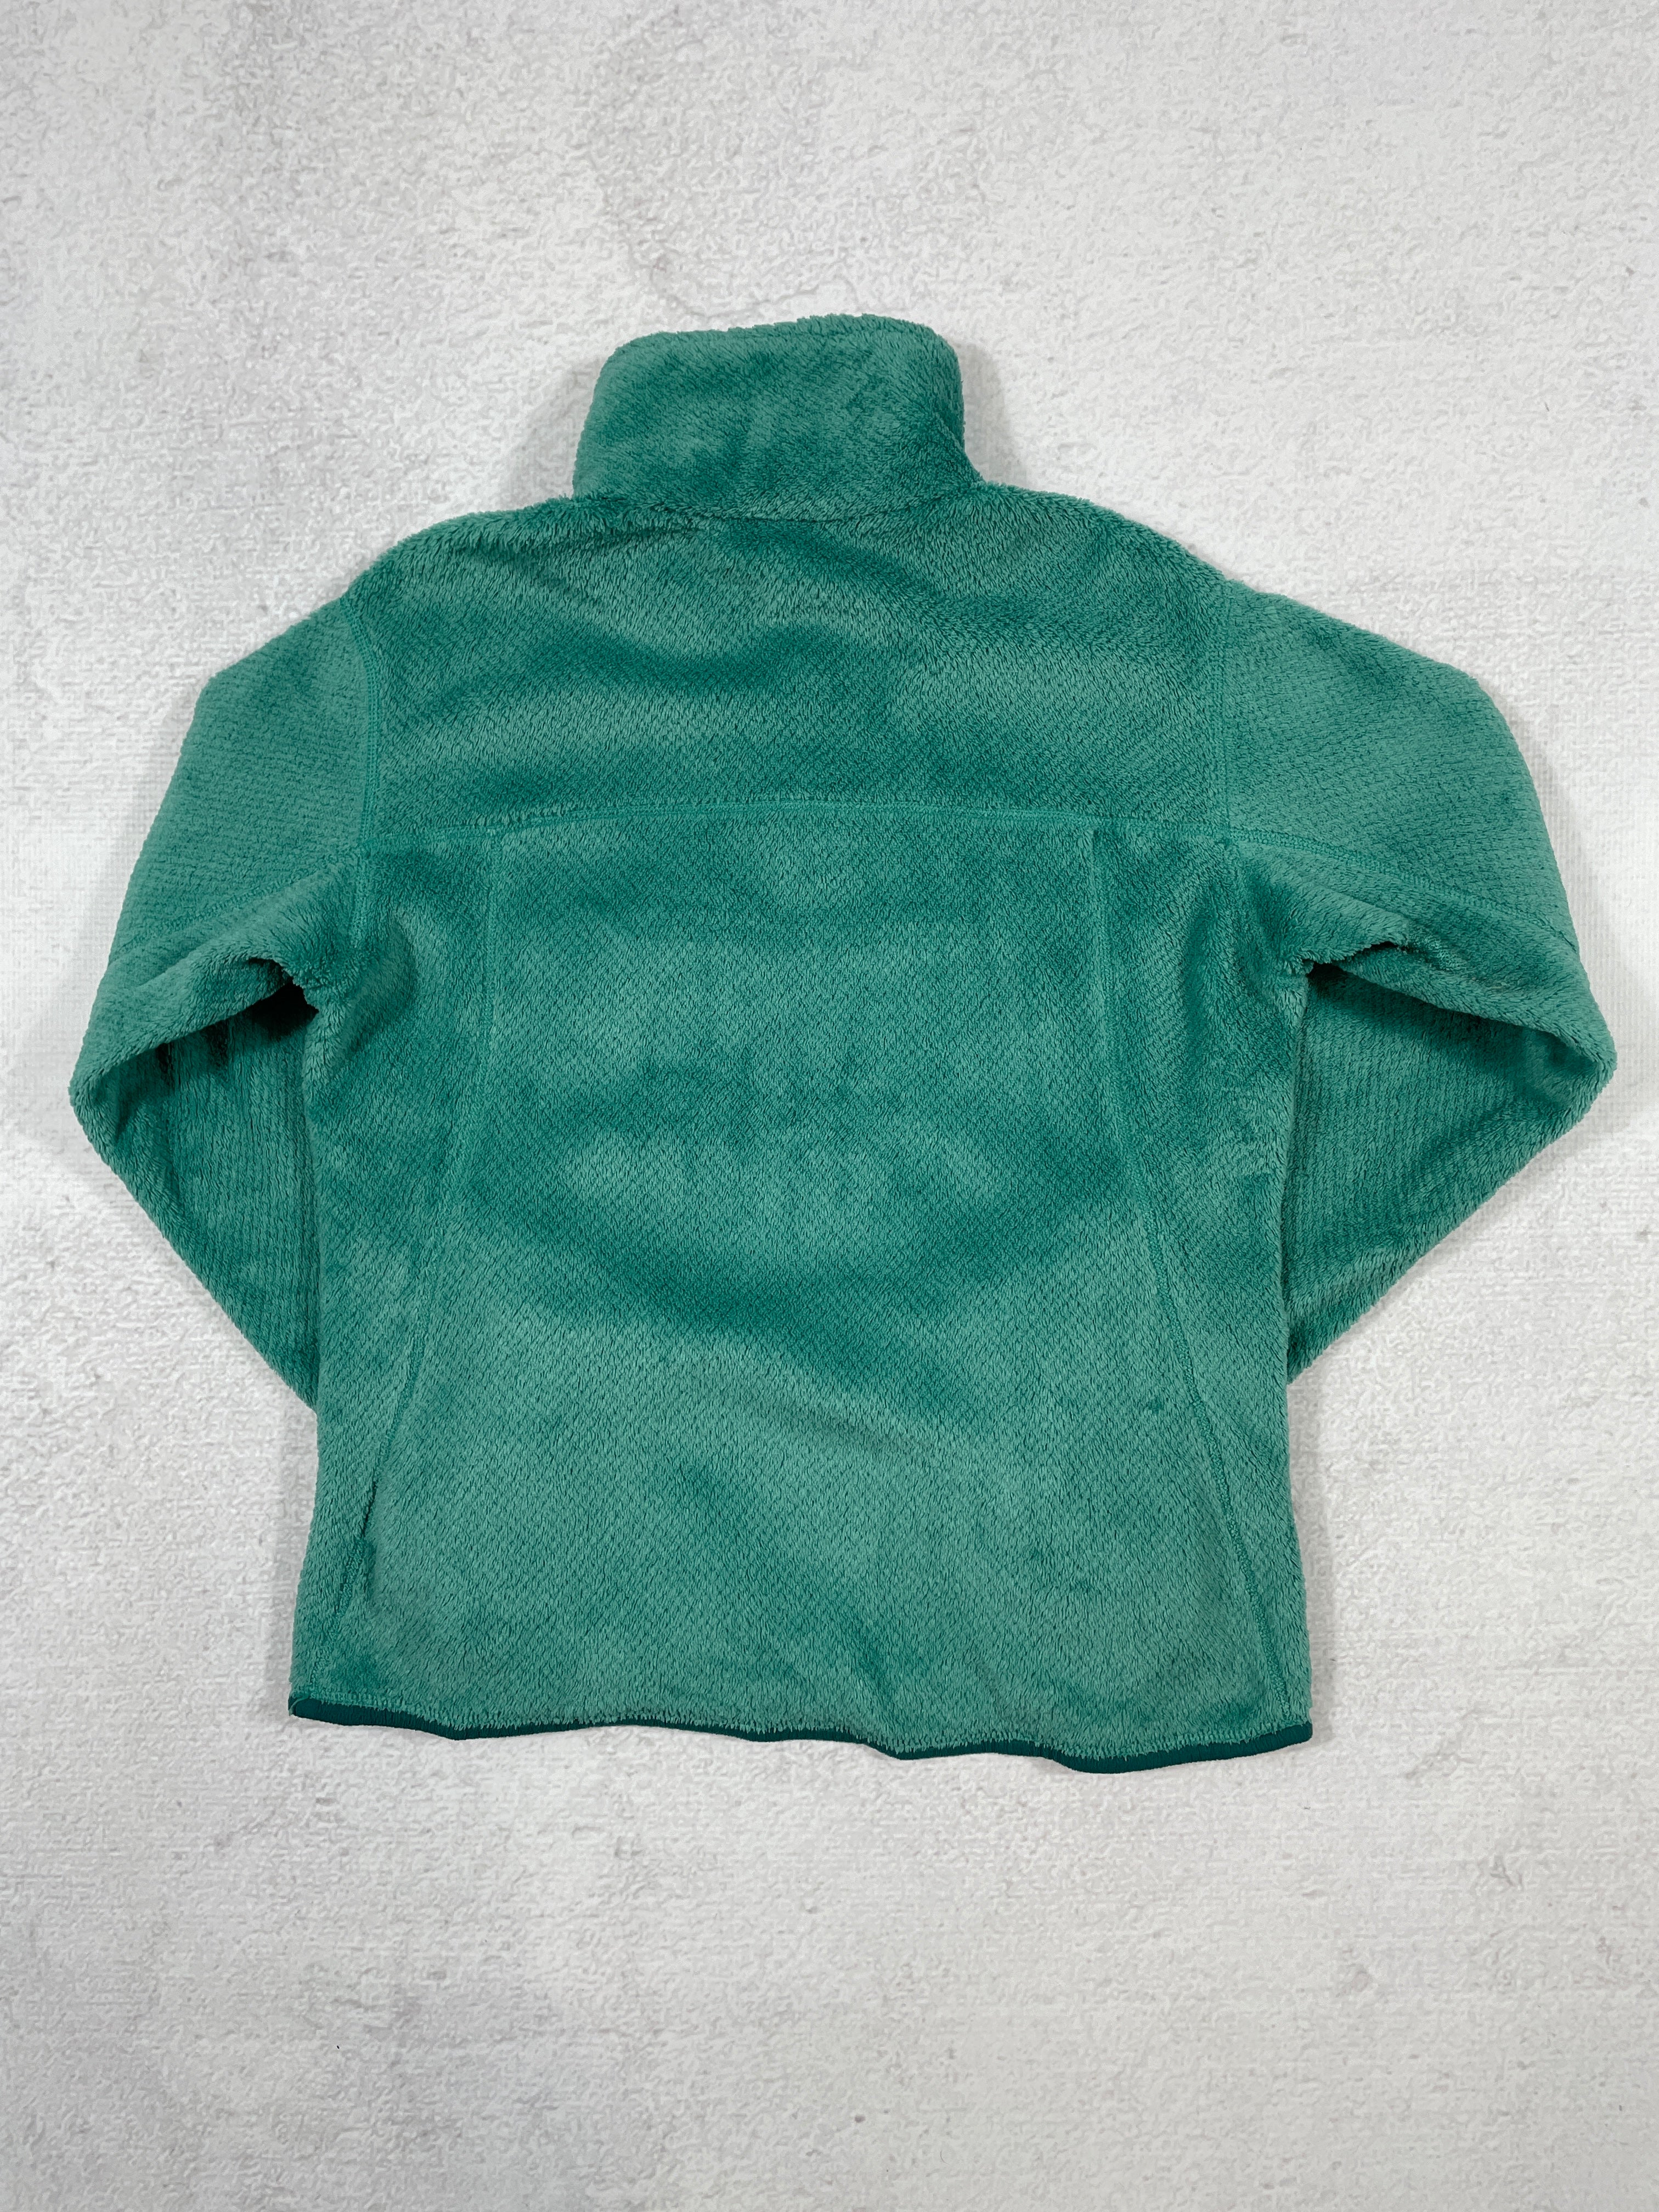 Vintage Patagonia Zip-Up Fleece Sweatshirt - Women's Medium